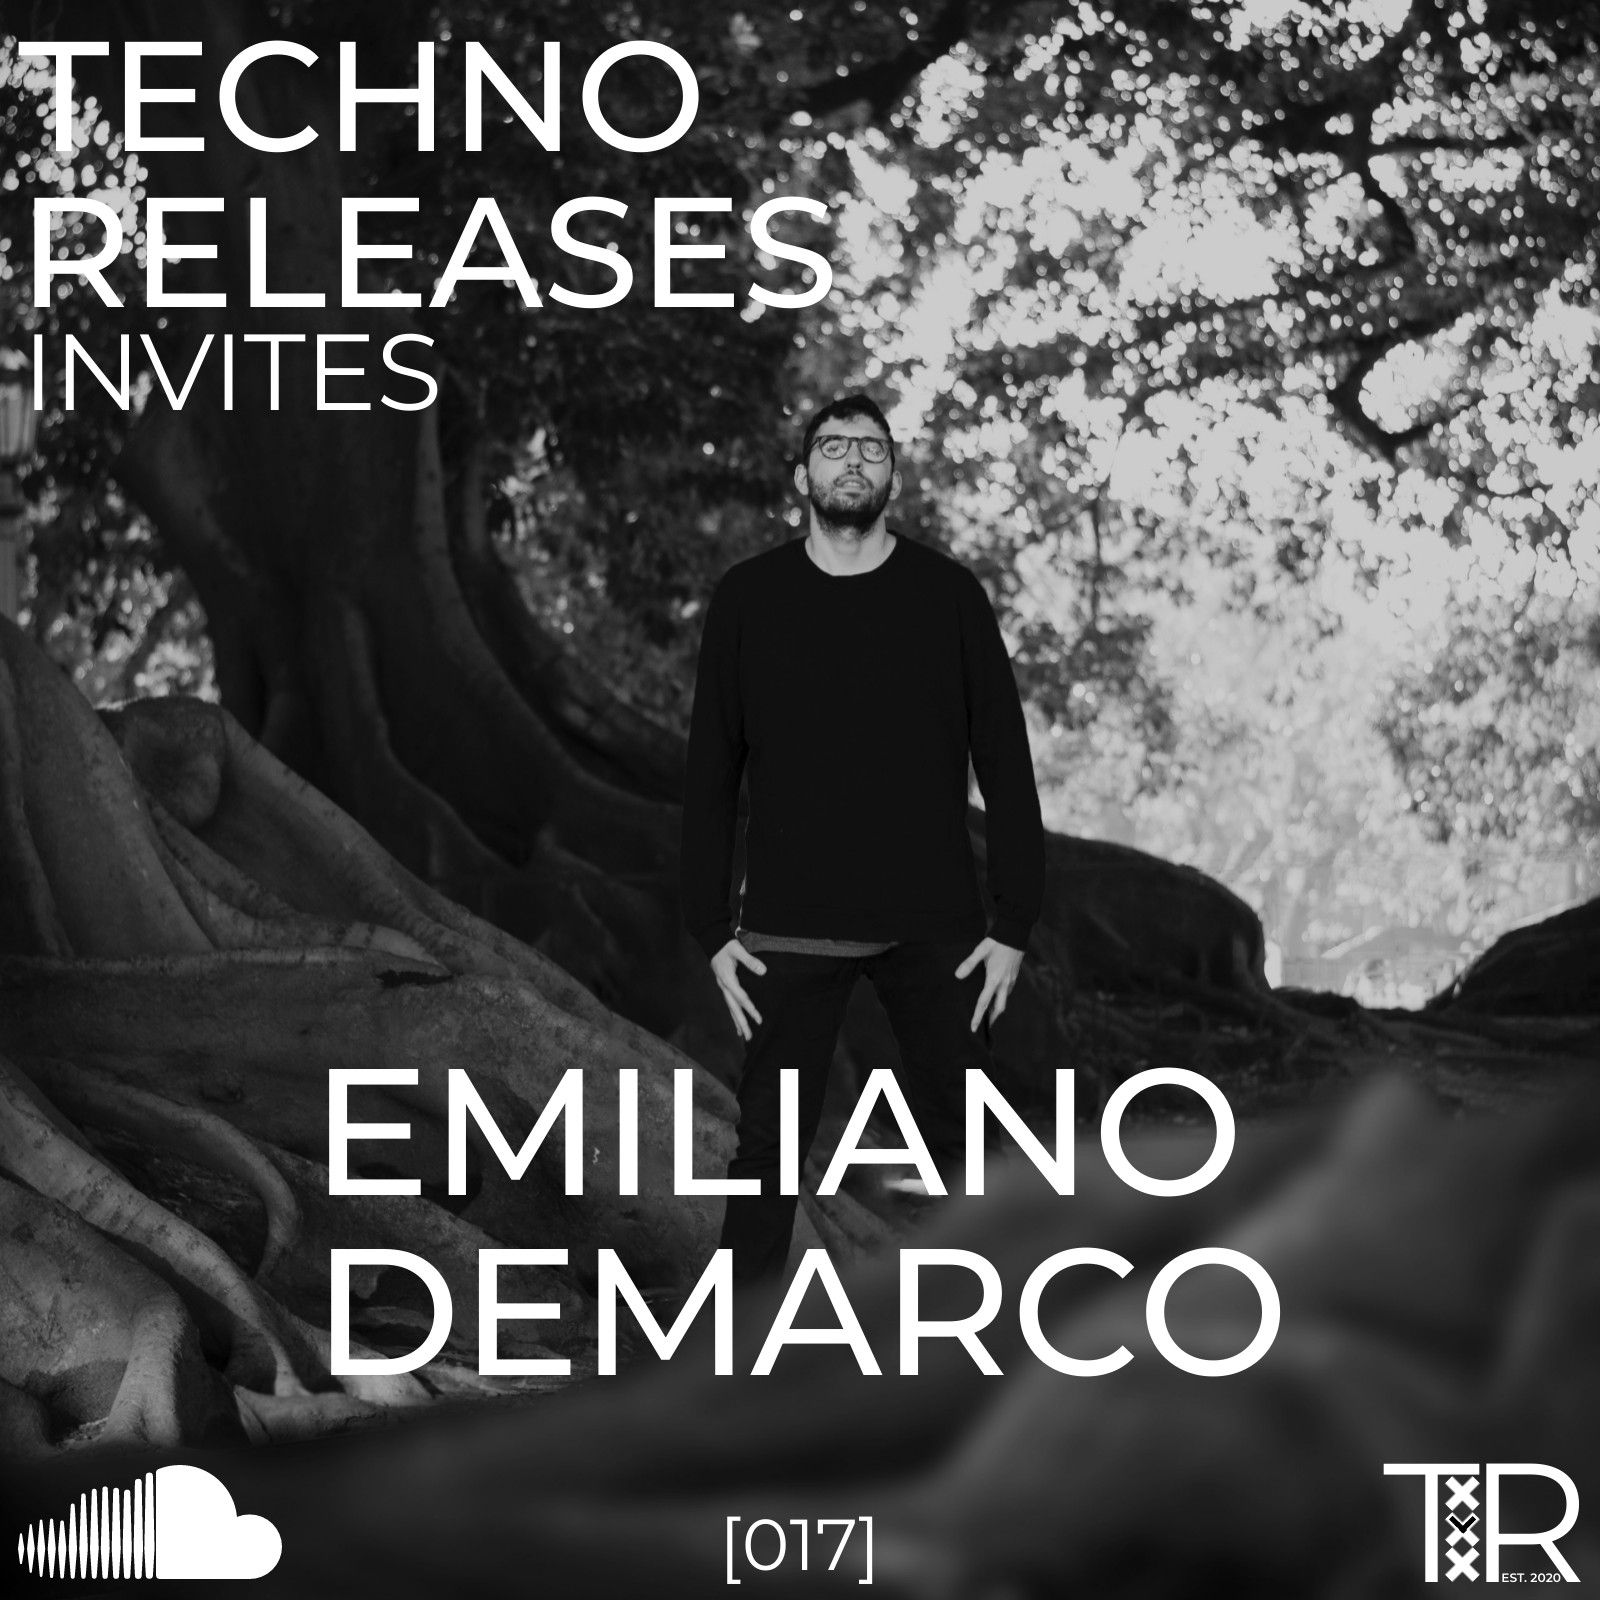 ഡൗൺലോഡ് Techno Releases Invites Emiliano Demarco - [017]